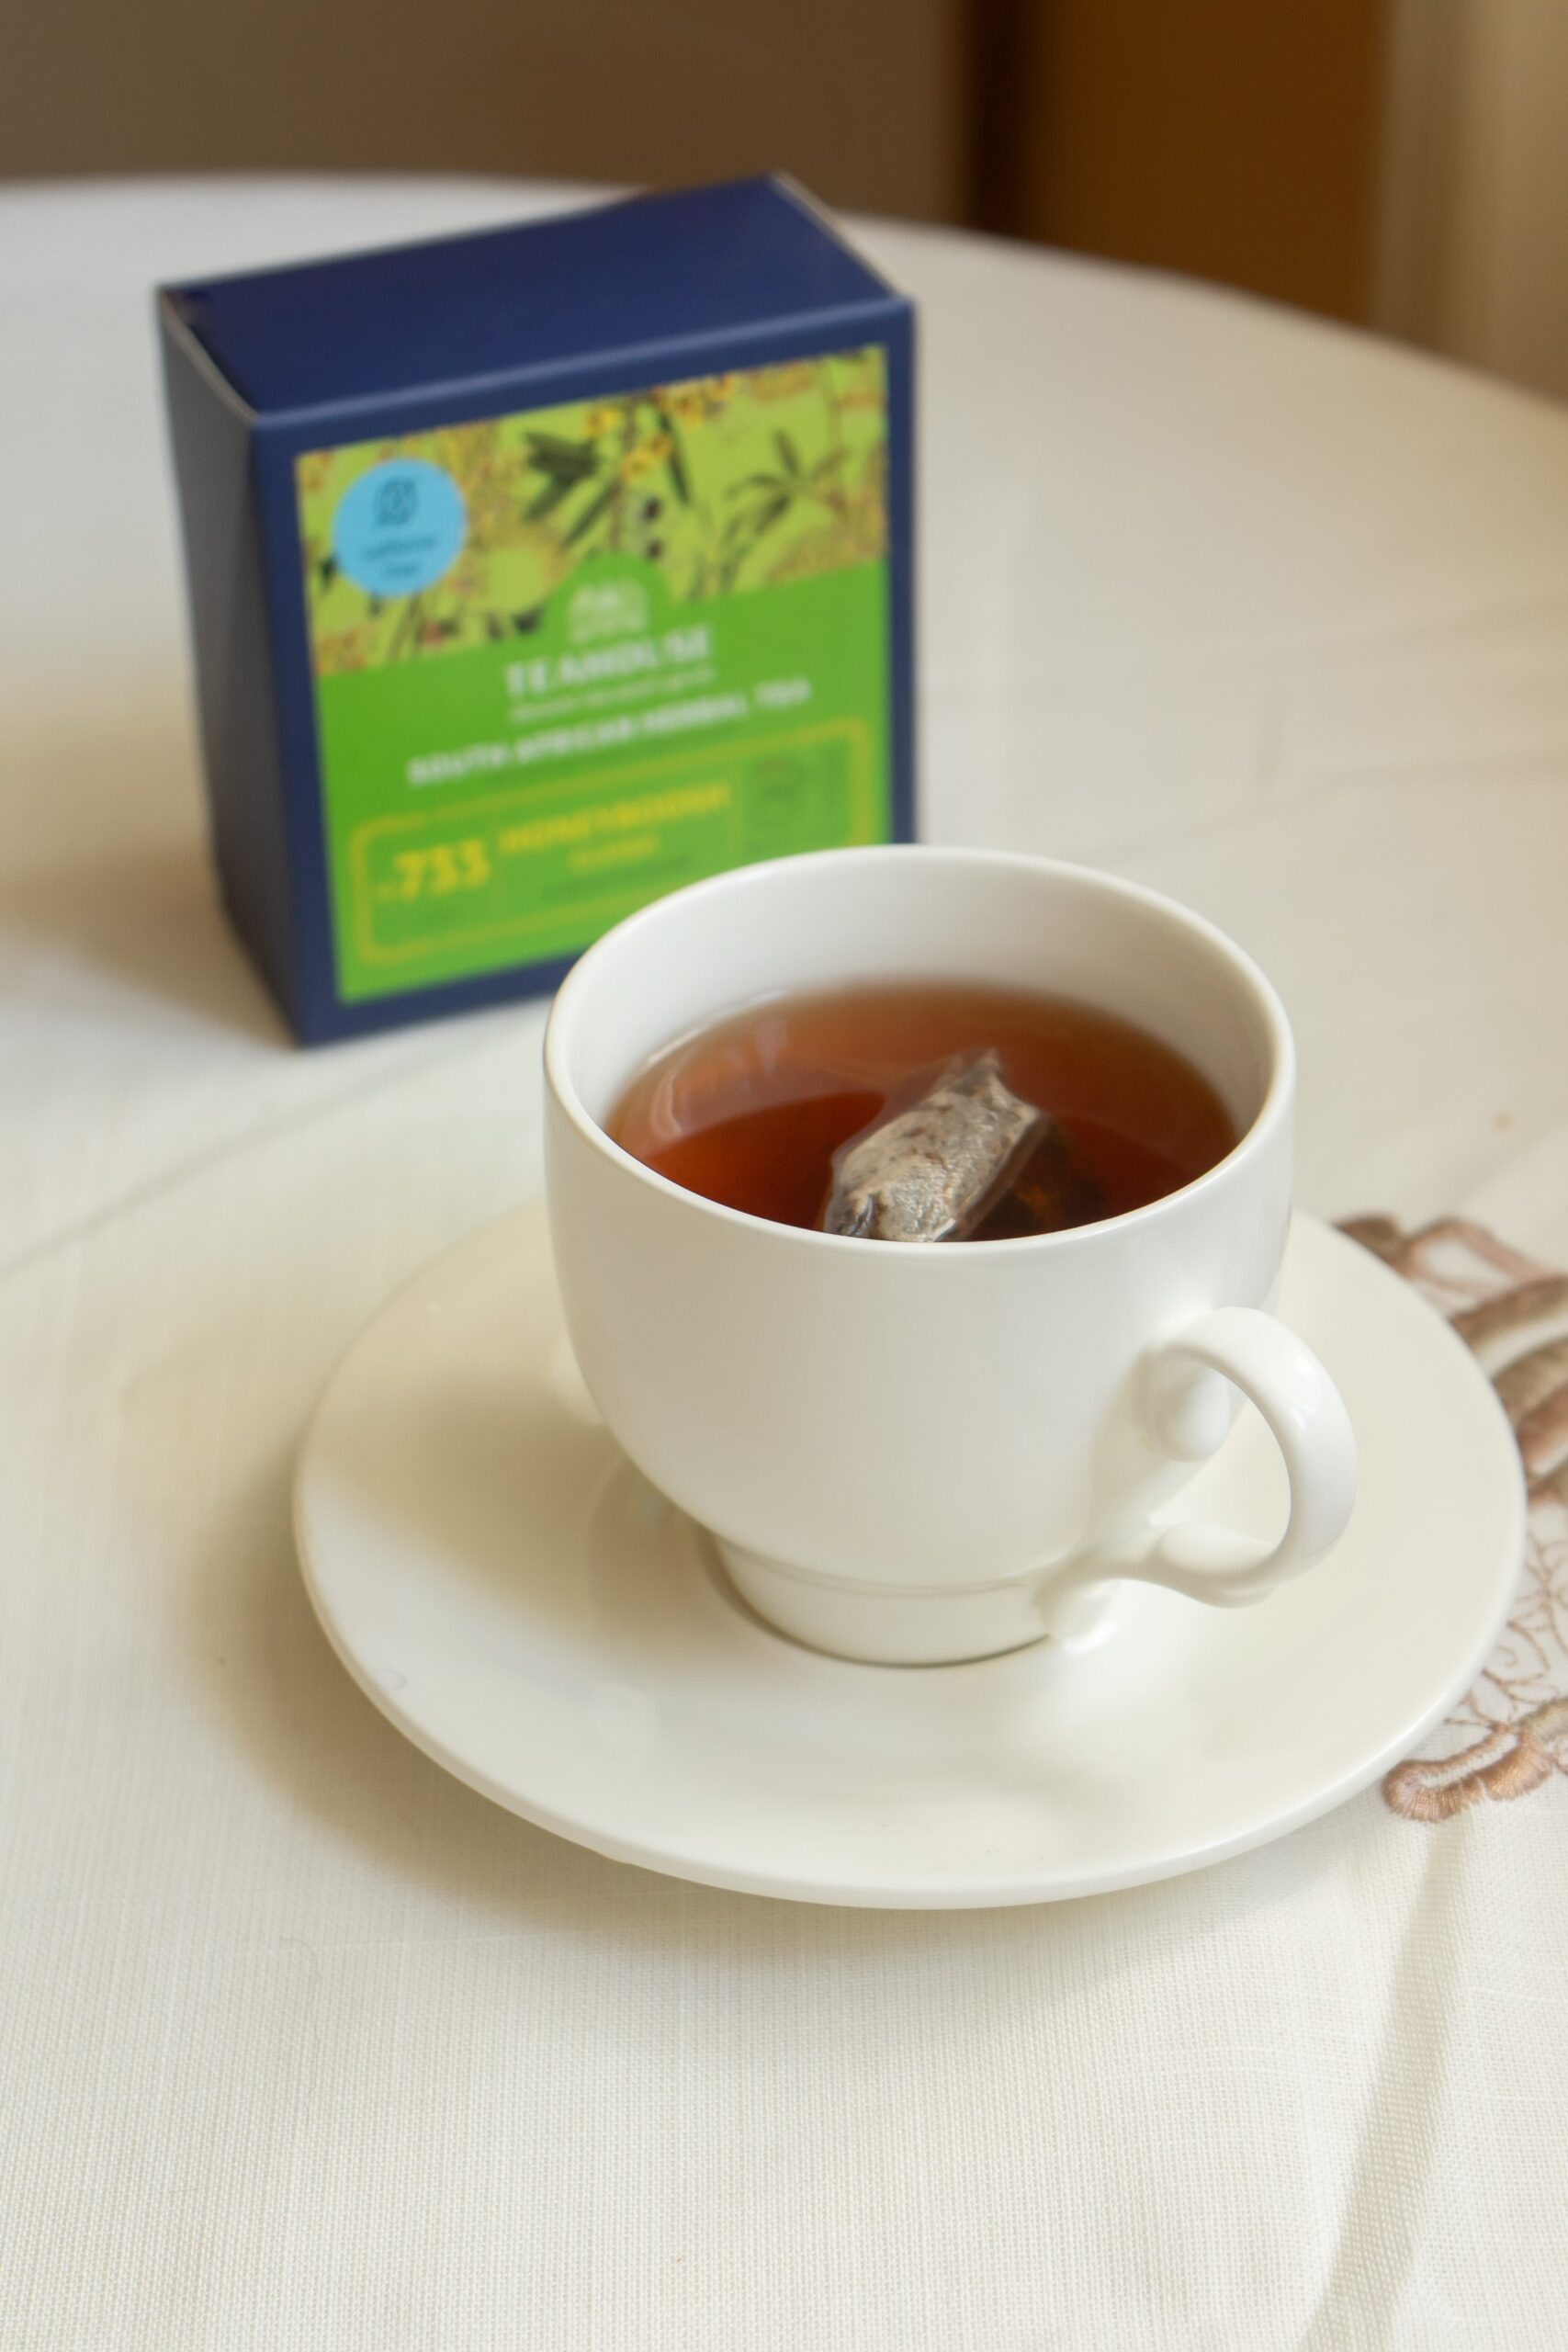 Чай Ханибуш классический №733 пакетированный (20фп*2,5г)